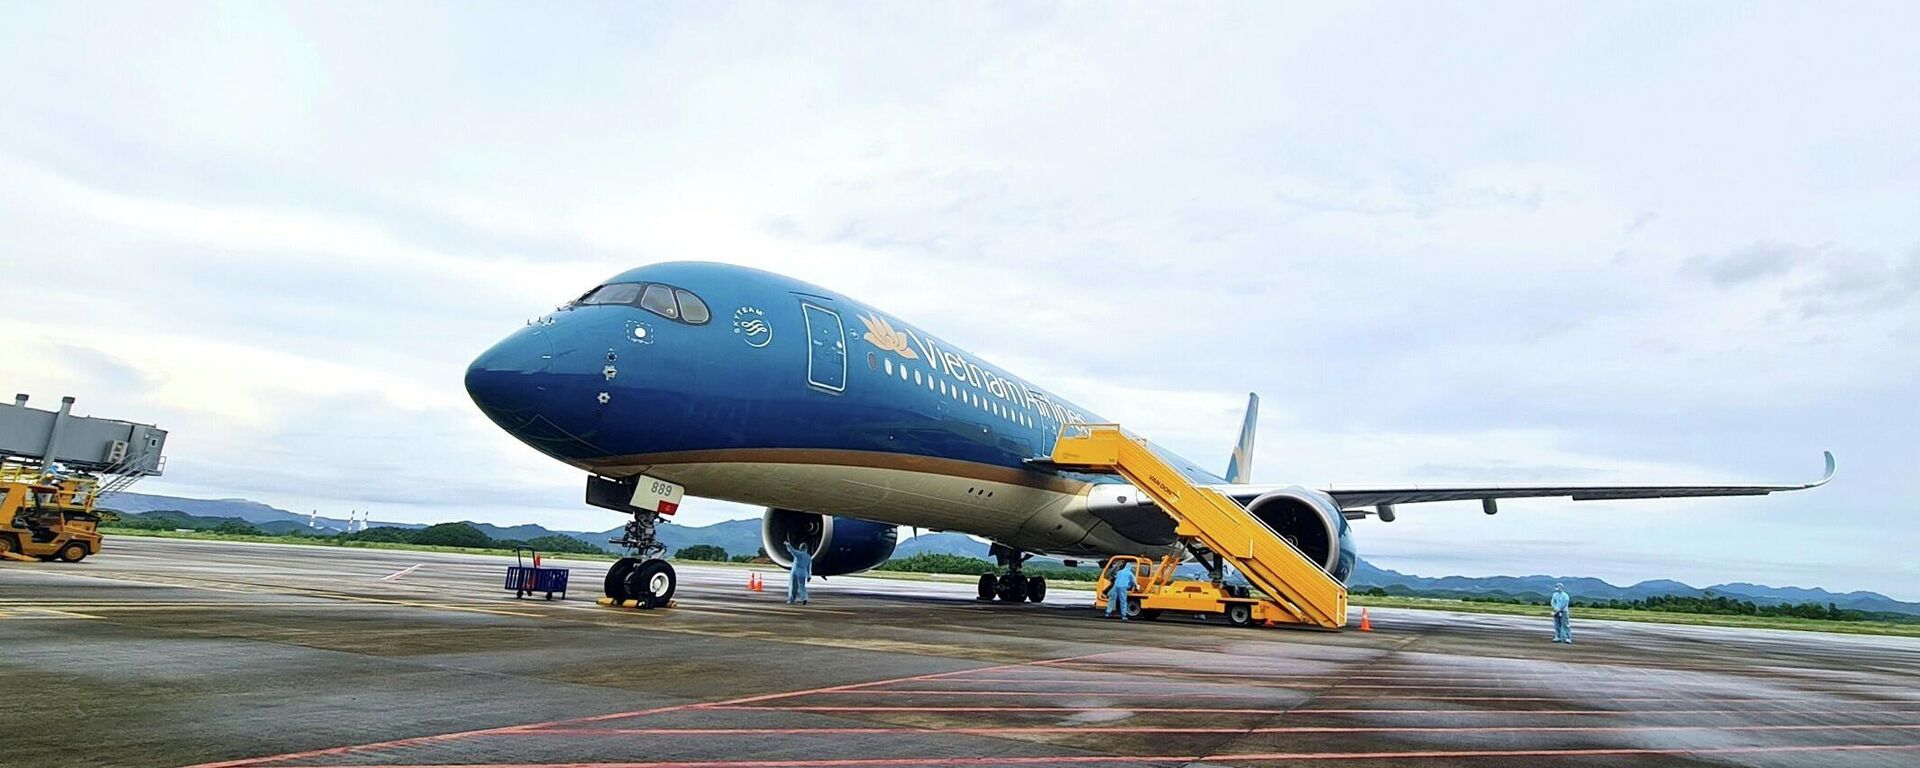 Chuyến bay mang số hiệu VN18 chở 301 hành khách từ Pháp hạ cánh an toàn ngày 23/9 tại sân bay quốc tế Vân Đồn. - Sputnik Việt Nam, 1920, 11.10.2021